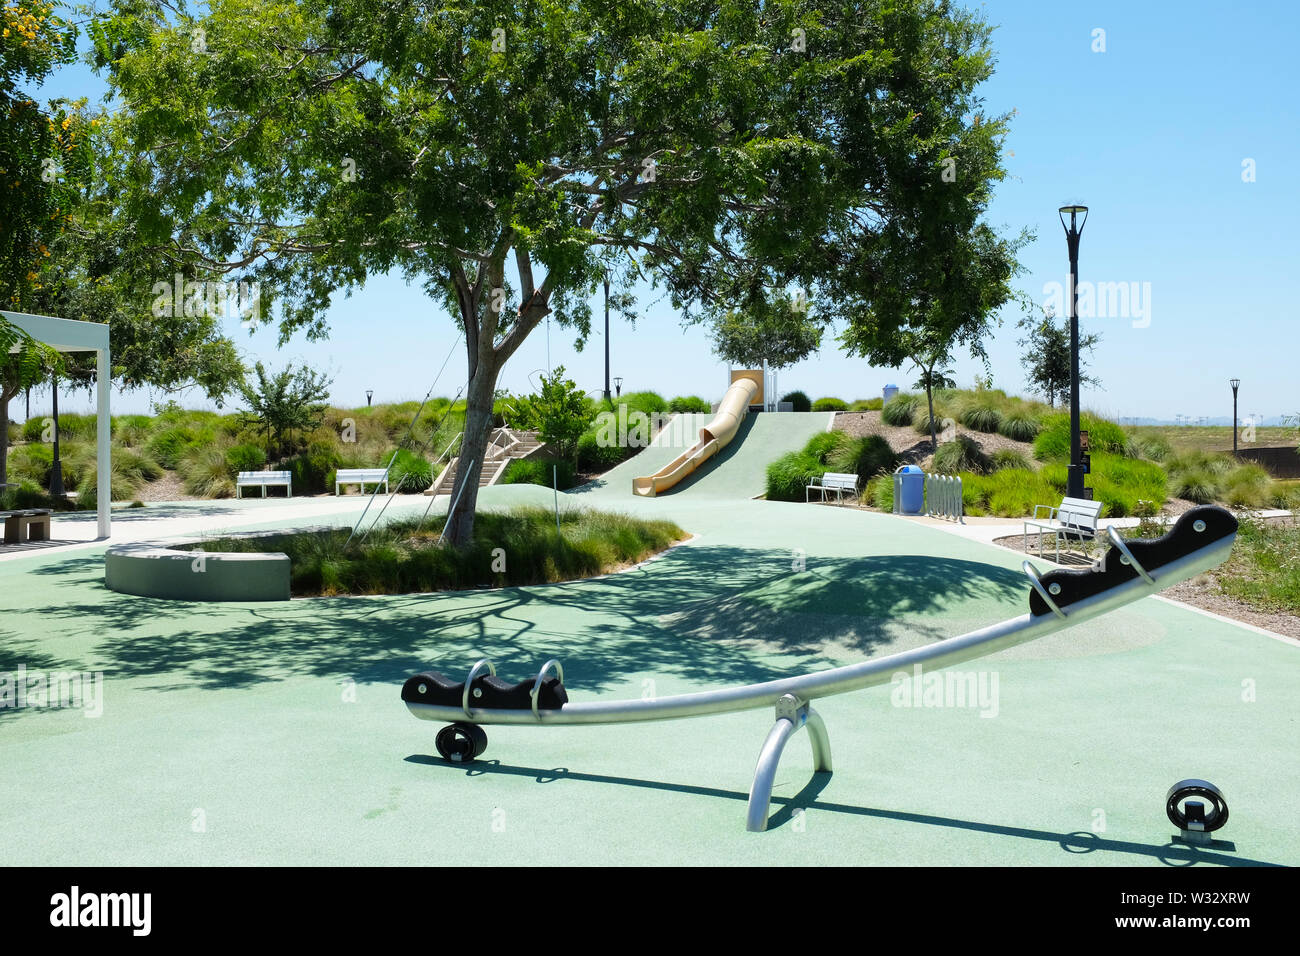 IRIVNE, Kalifornien - 11. JULI 2019: Kinderspielplatz im Bosque Bereich des Orange County Park. Stockfoto